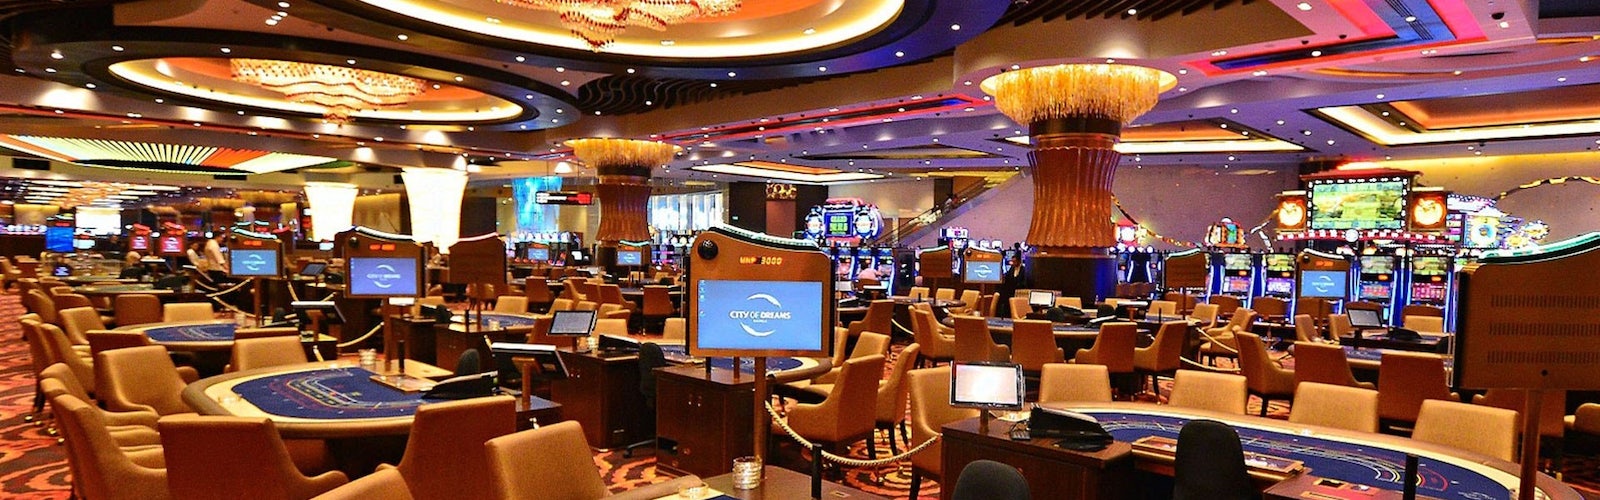 Casino online india